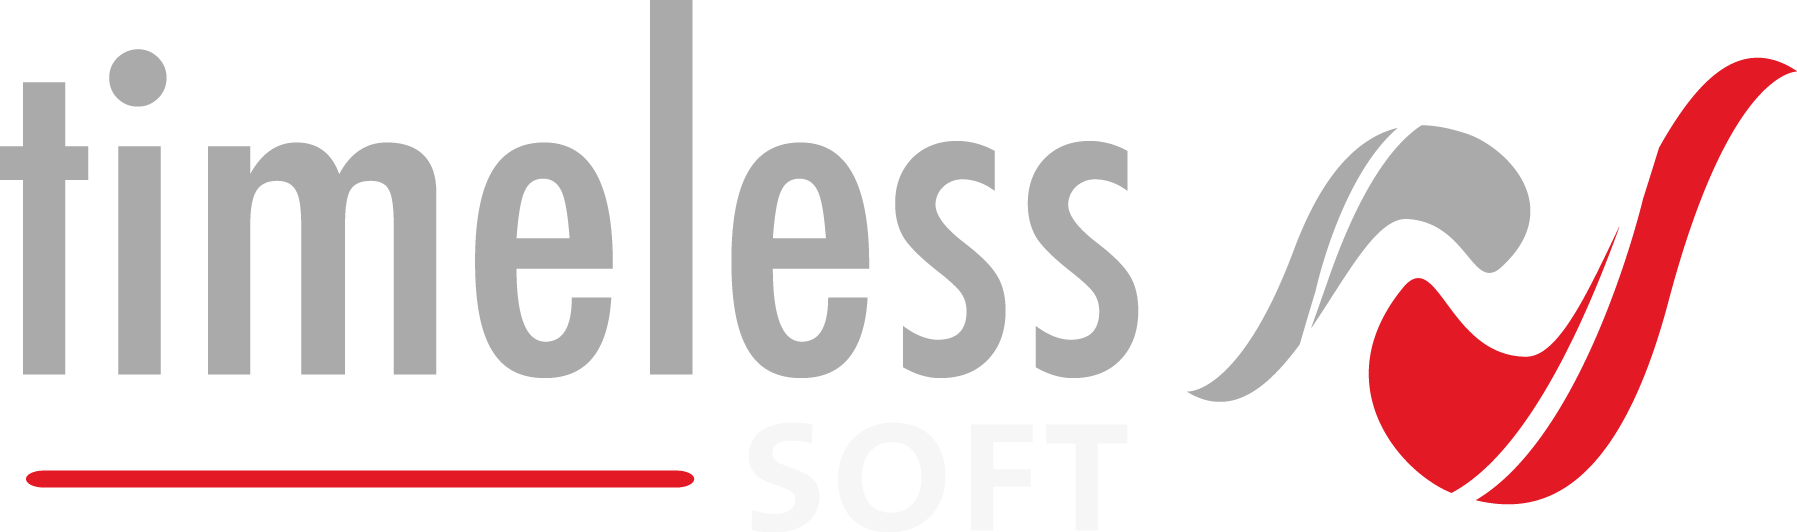 Timeless logo